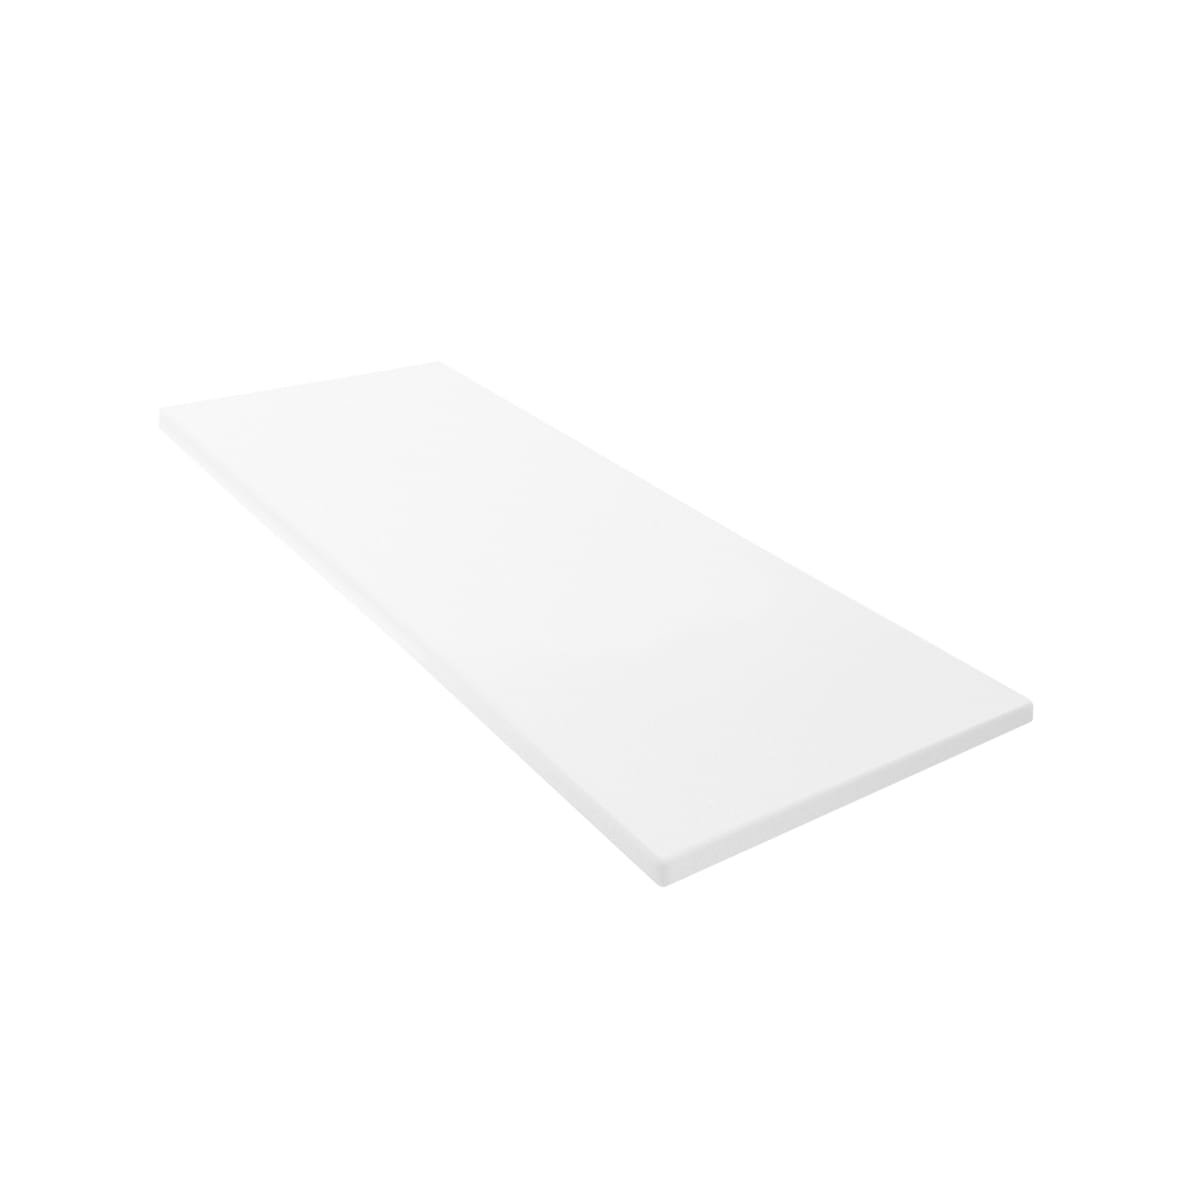 True 810838 Polyethylene Cutting Board, 72 x 19 x 1/2 Inch Thick, for ...